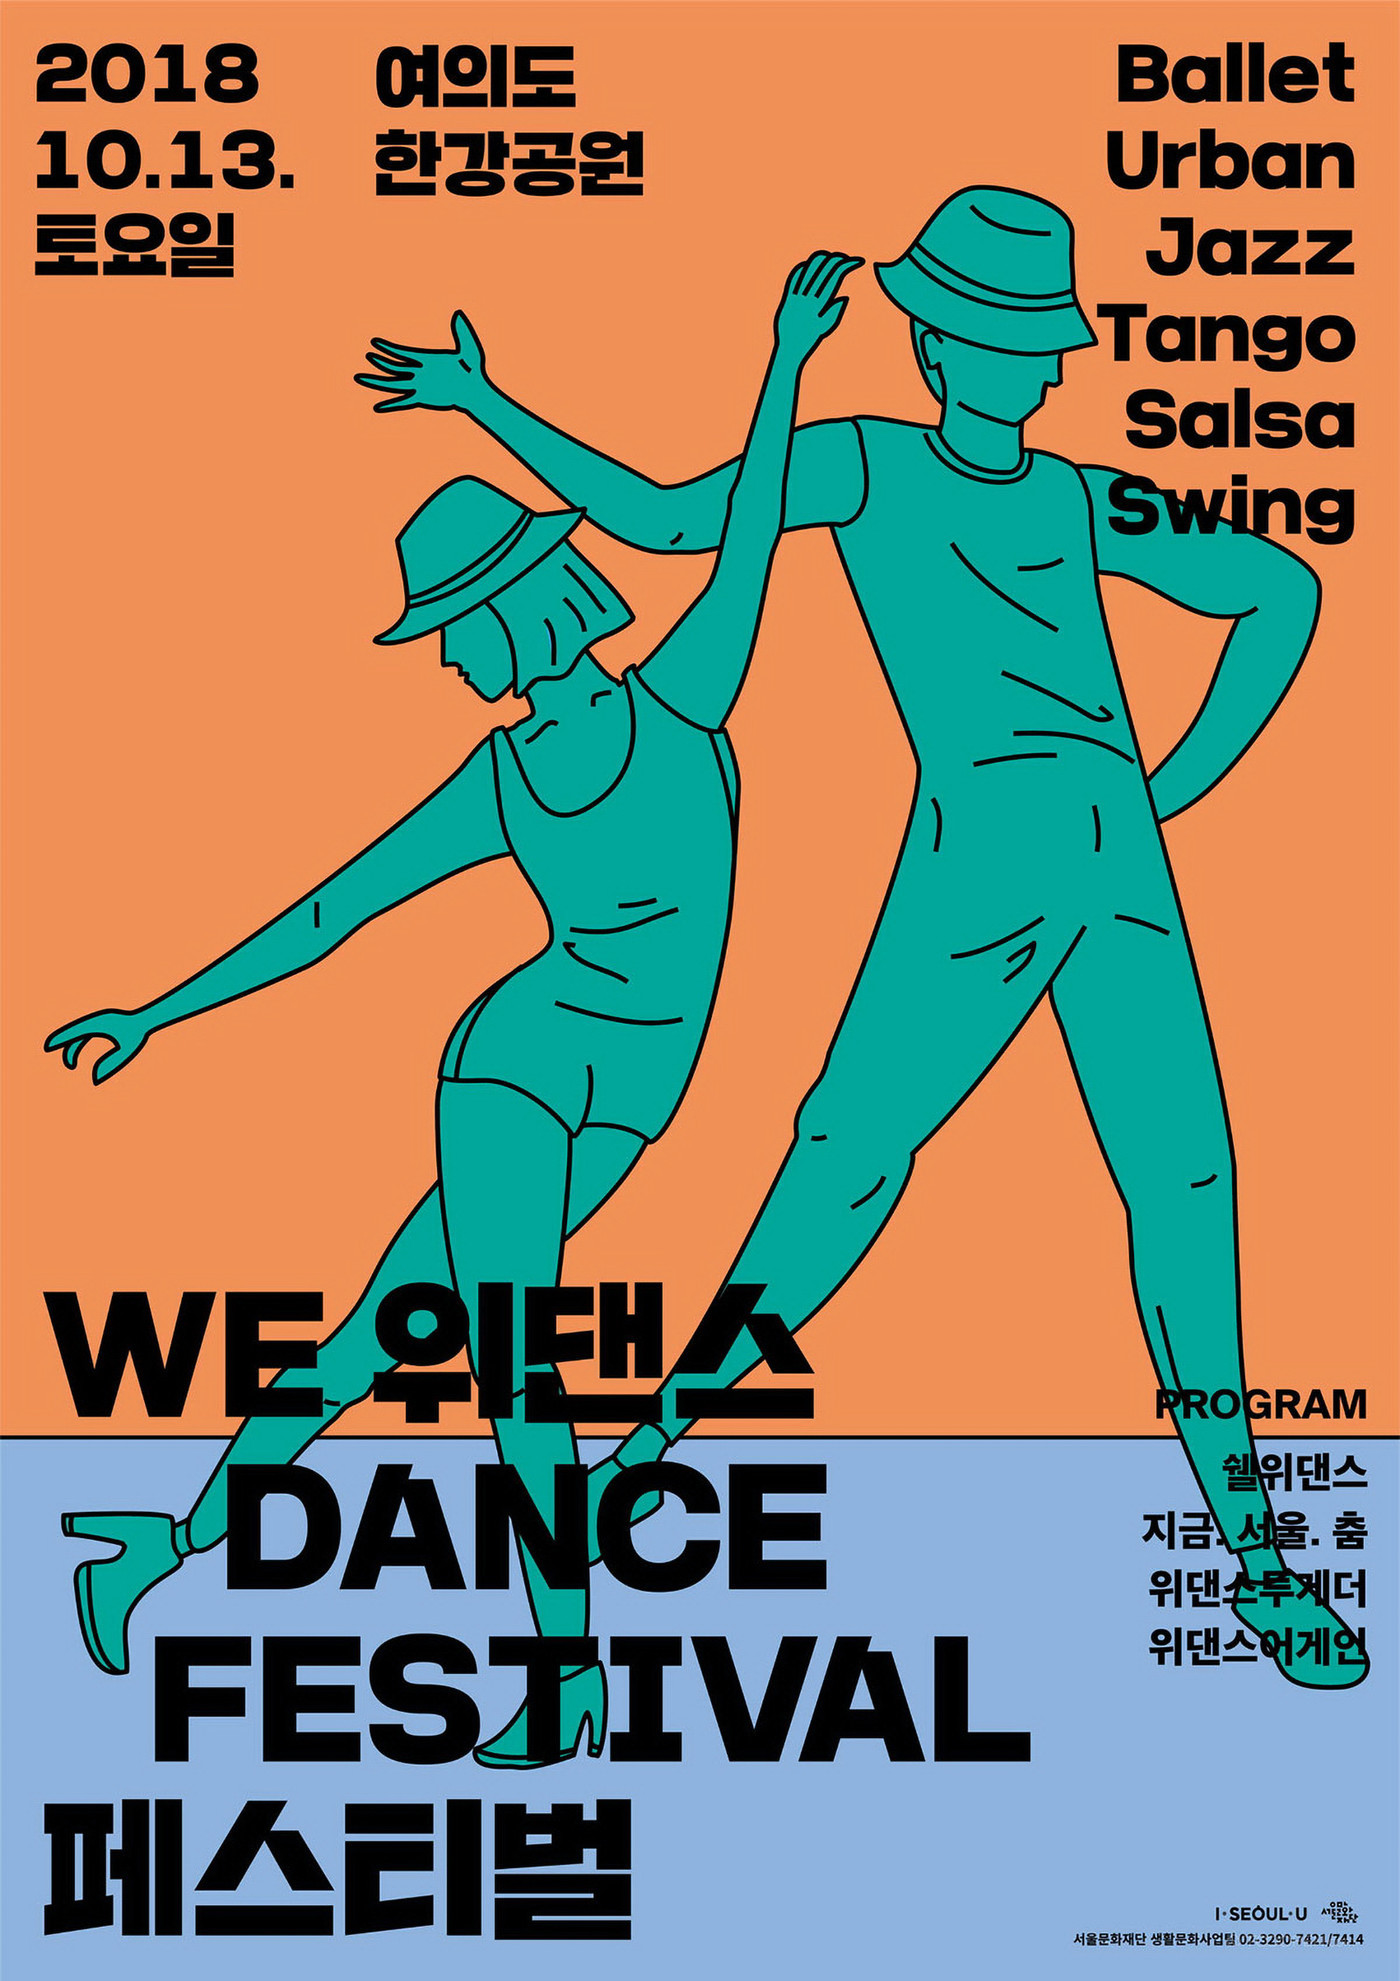 国外简笔线条舞蹈人物插画海报设计欣赏-05